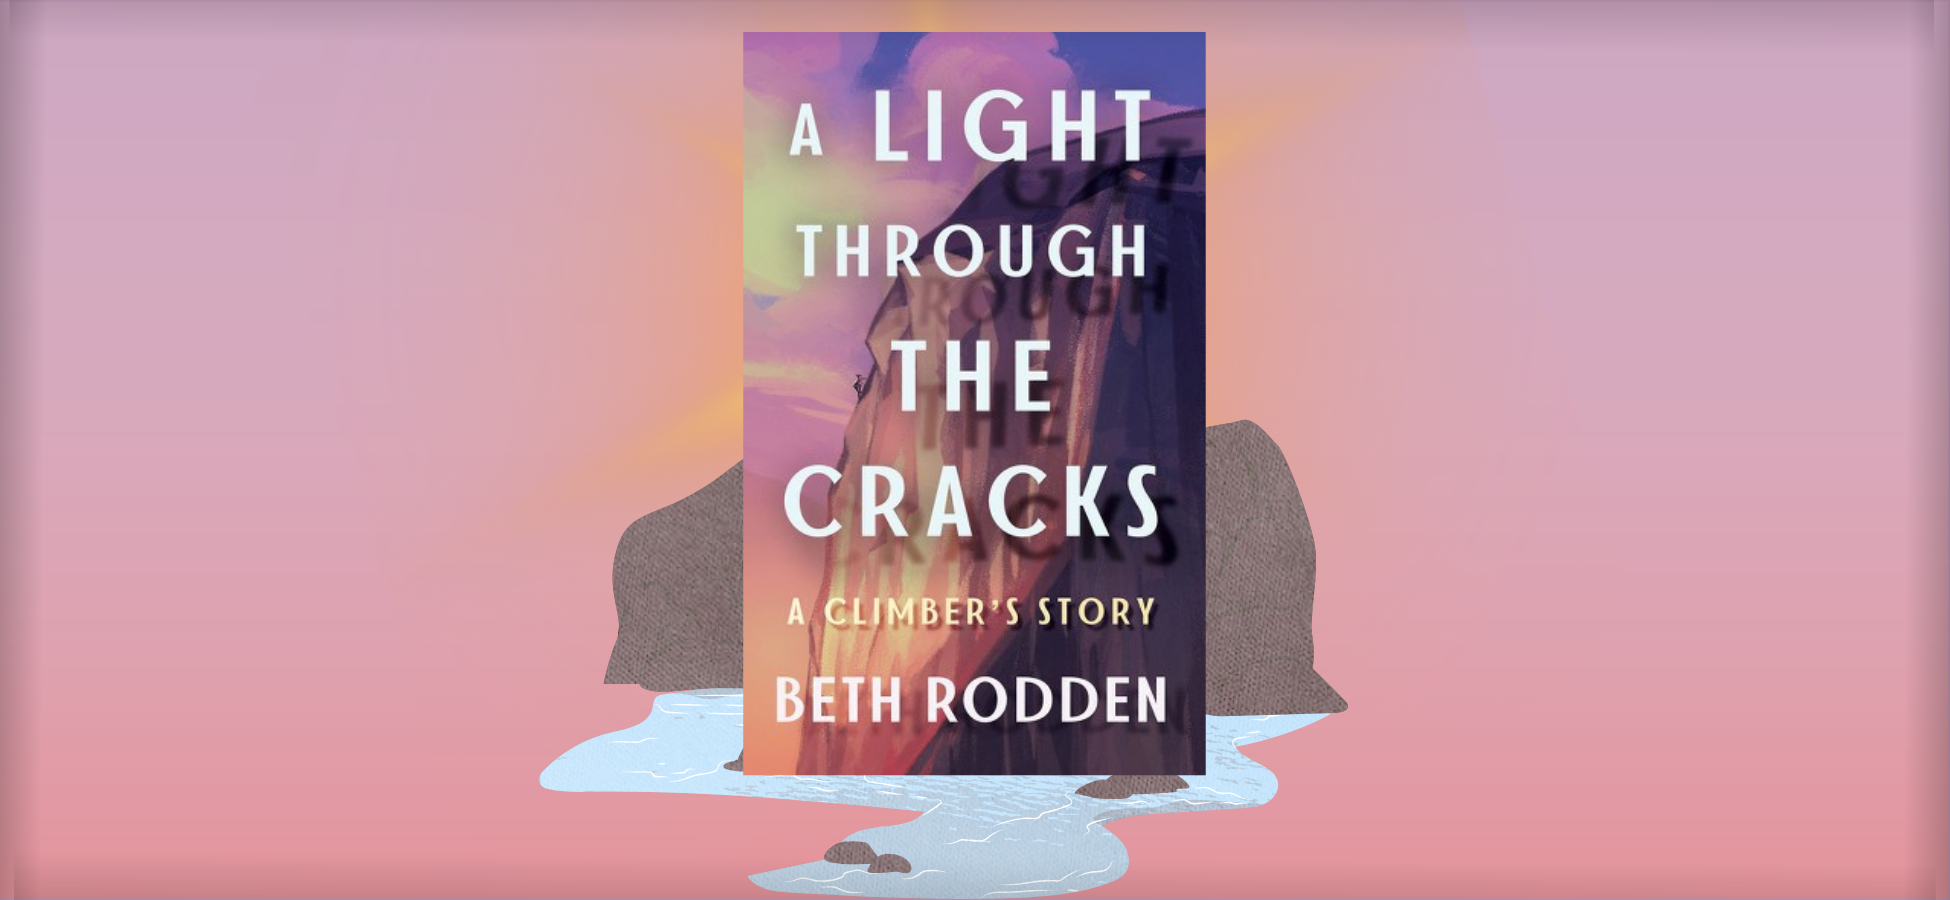 A Light Through the Cracks